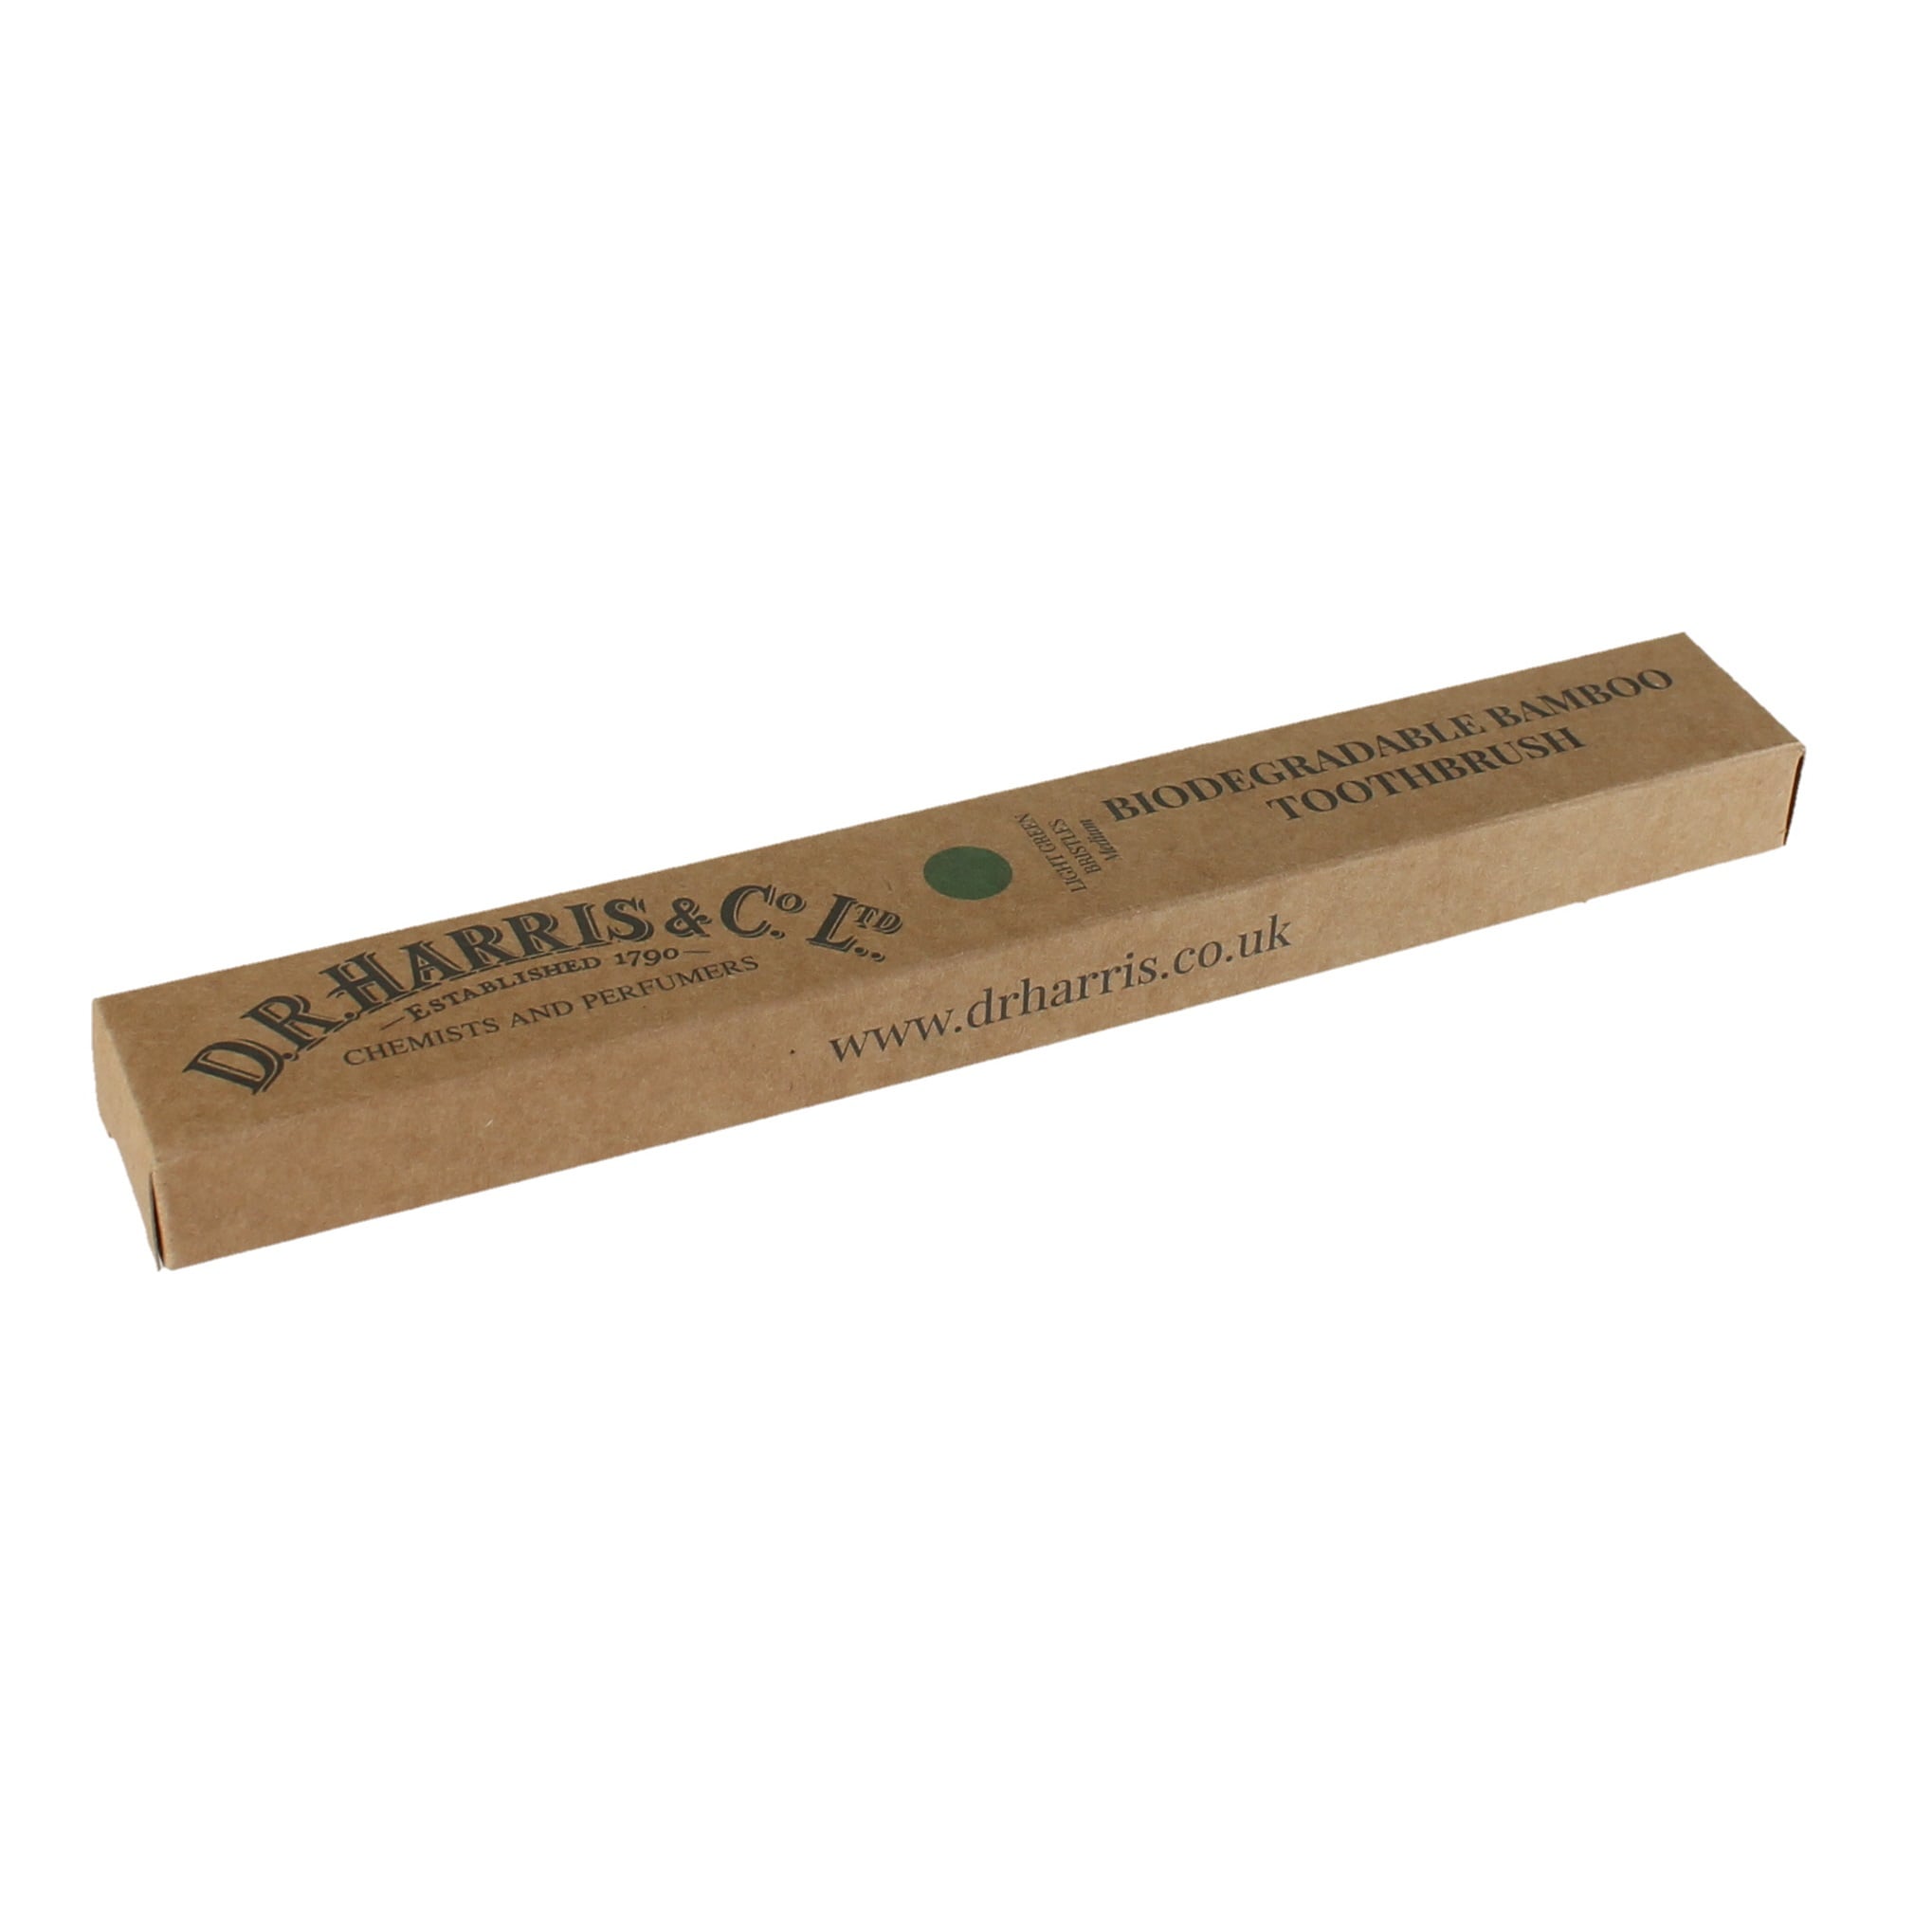 Cepillo de dientes de bambú biodegradable con cerdas verdes claras DR Harris